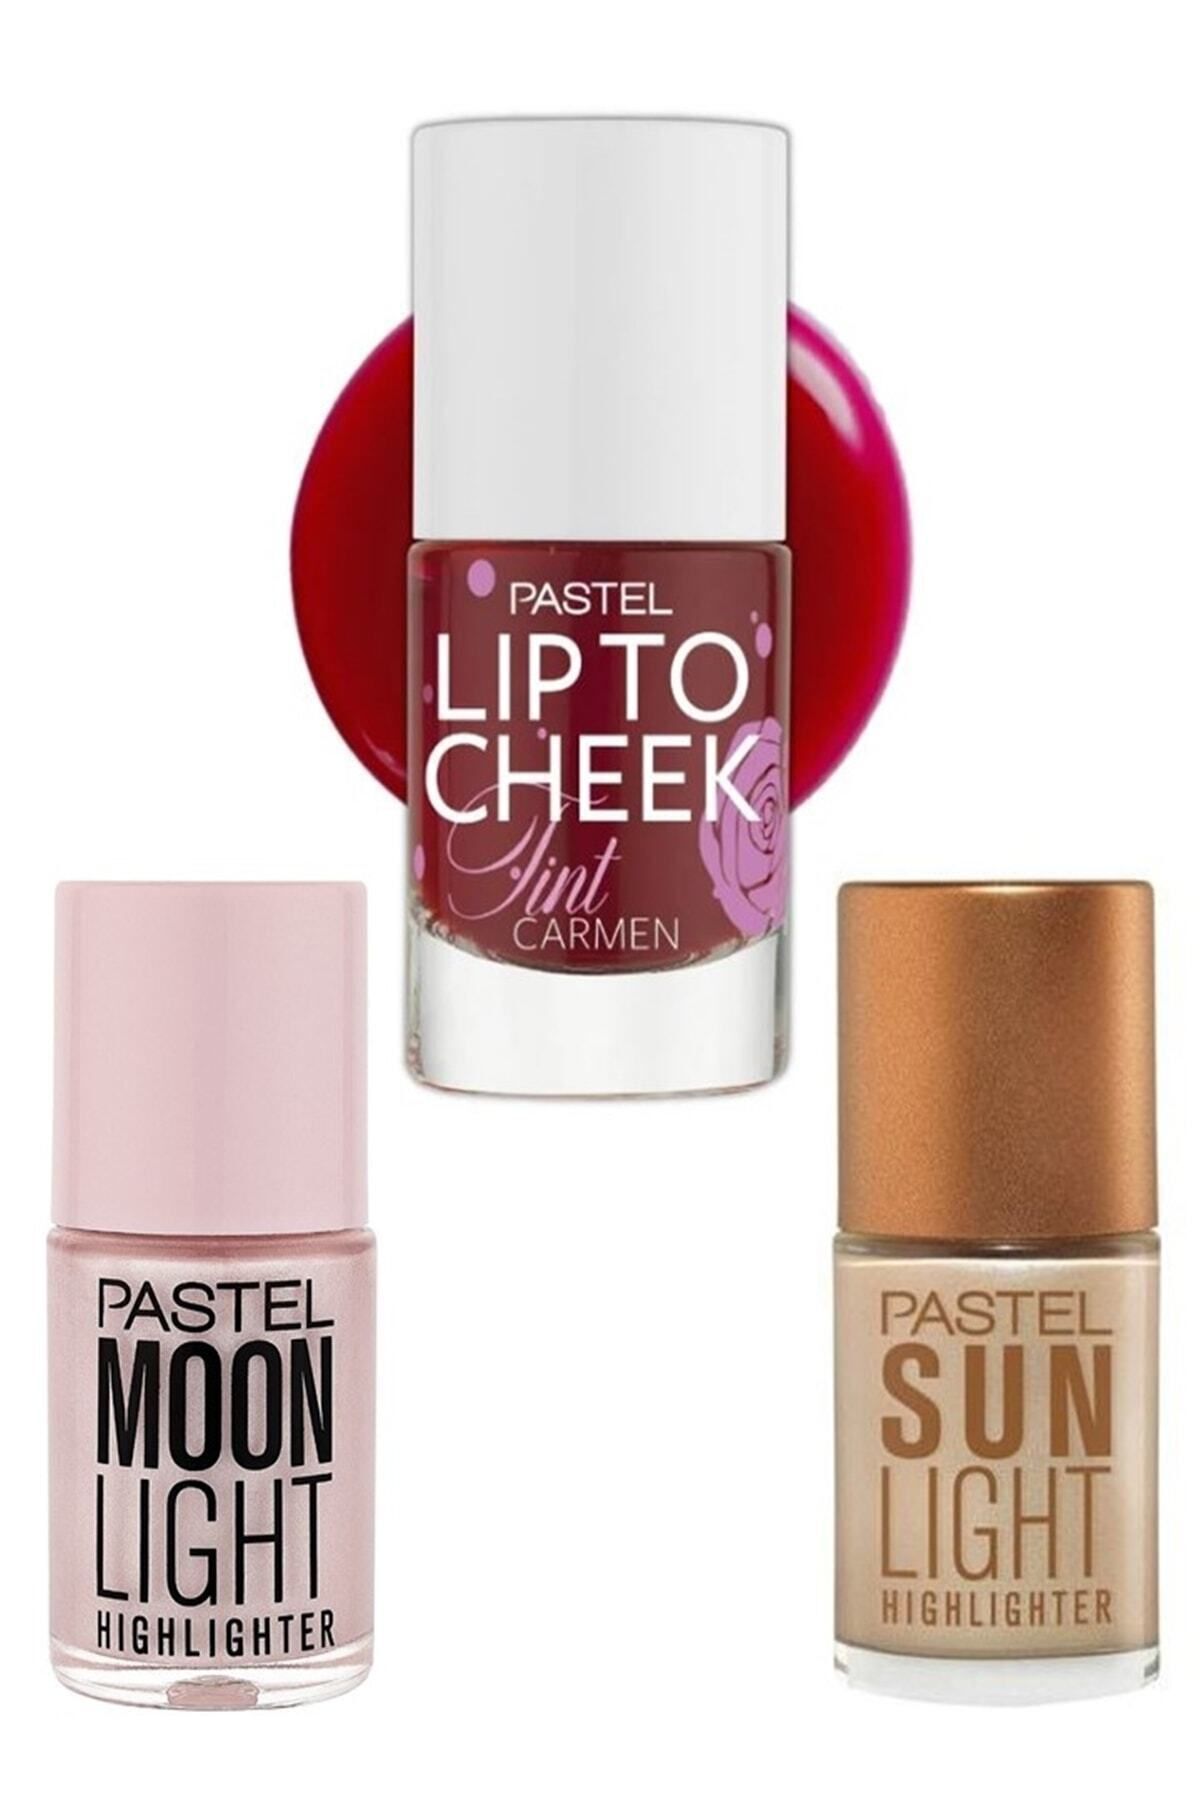 Pastel Lip To Cheek Tint Carmen + Moonlight Highlighter 15 Ml + Sun Light Highlighter 15 Ml